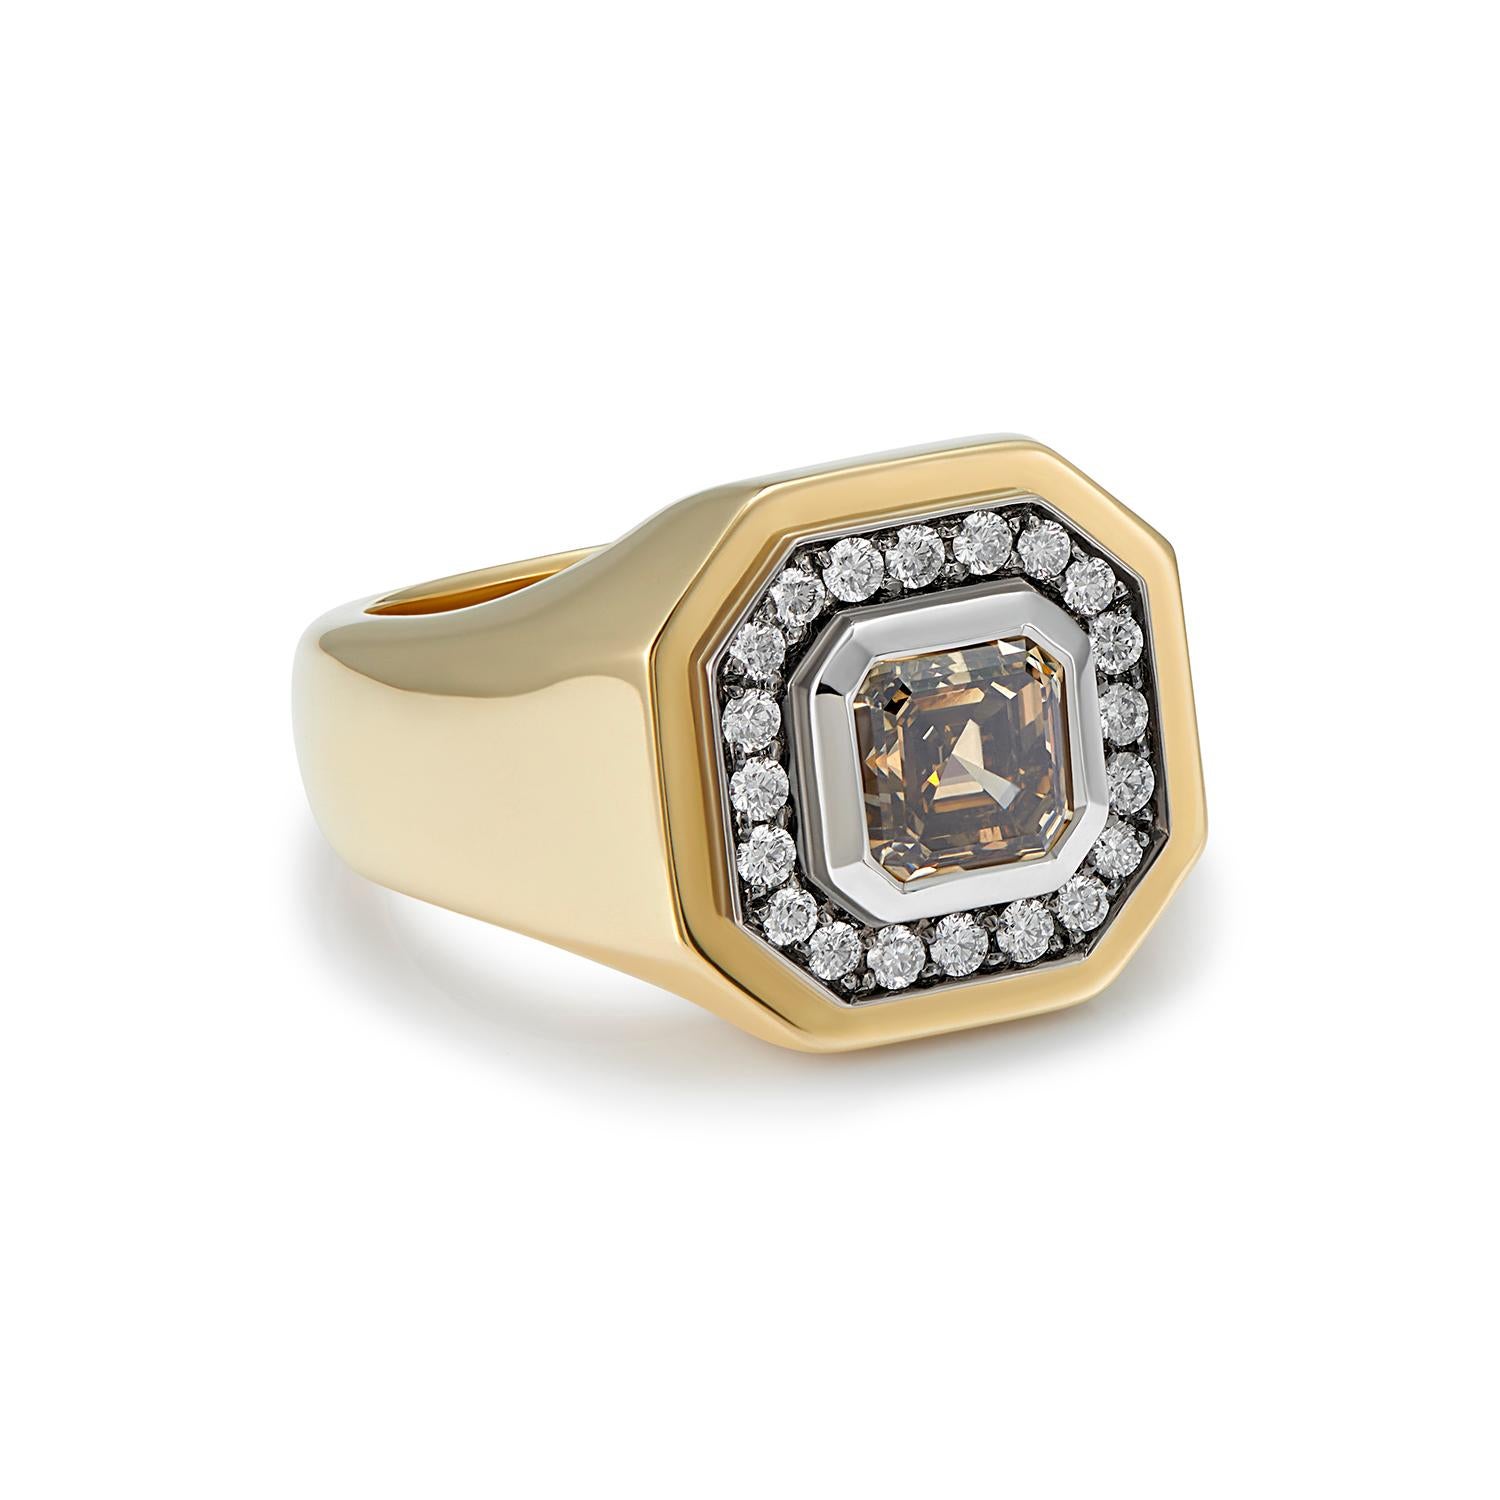 1,24ct Achteckiger Diamant im Cognacbraun-Schliff
0,54ct Weiße Diamanten
18k Gelbgold 

Ein ganz besonderer Ring, perfekt für alle, die sich einen etwas anderen Verlobungsring wünschen.

Dieser Statement-Ring ist mit einem cognacbraunen Diamanten im